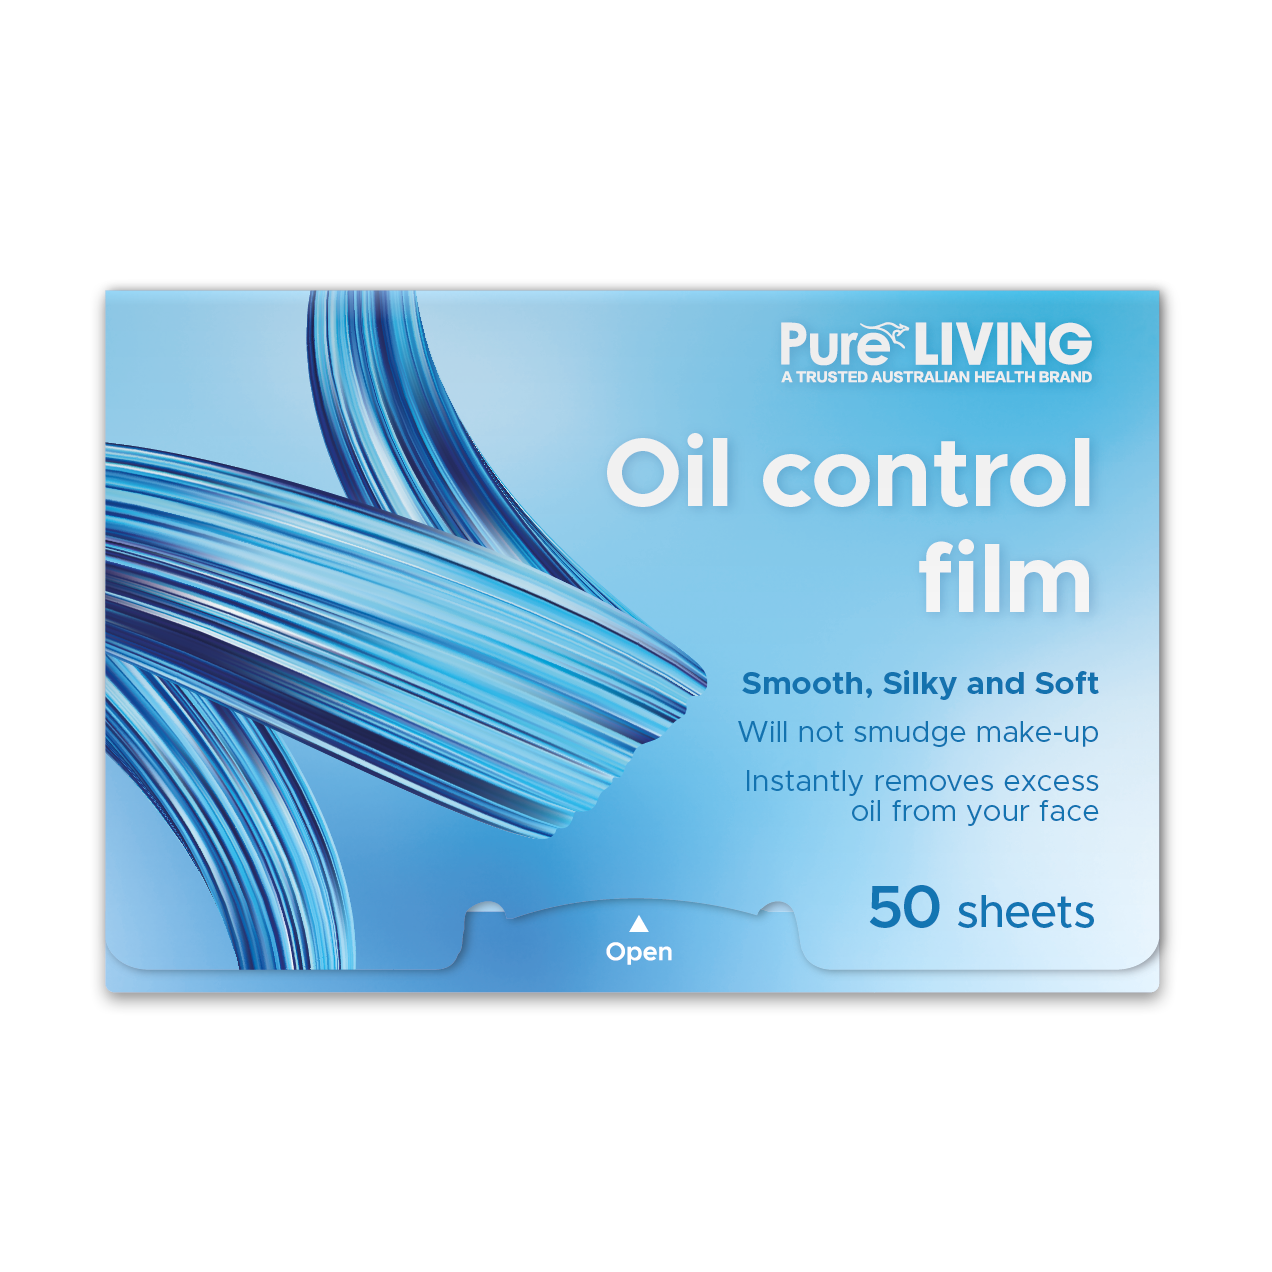 Oil Control Film